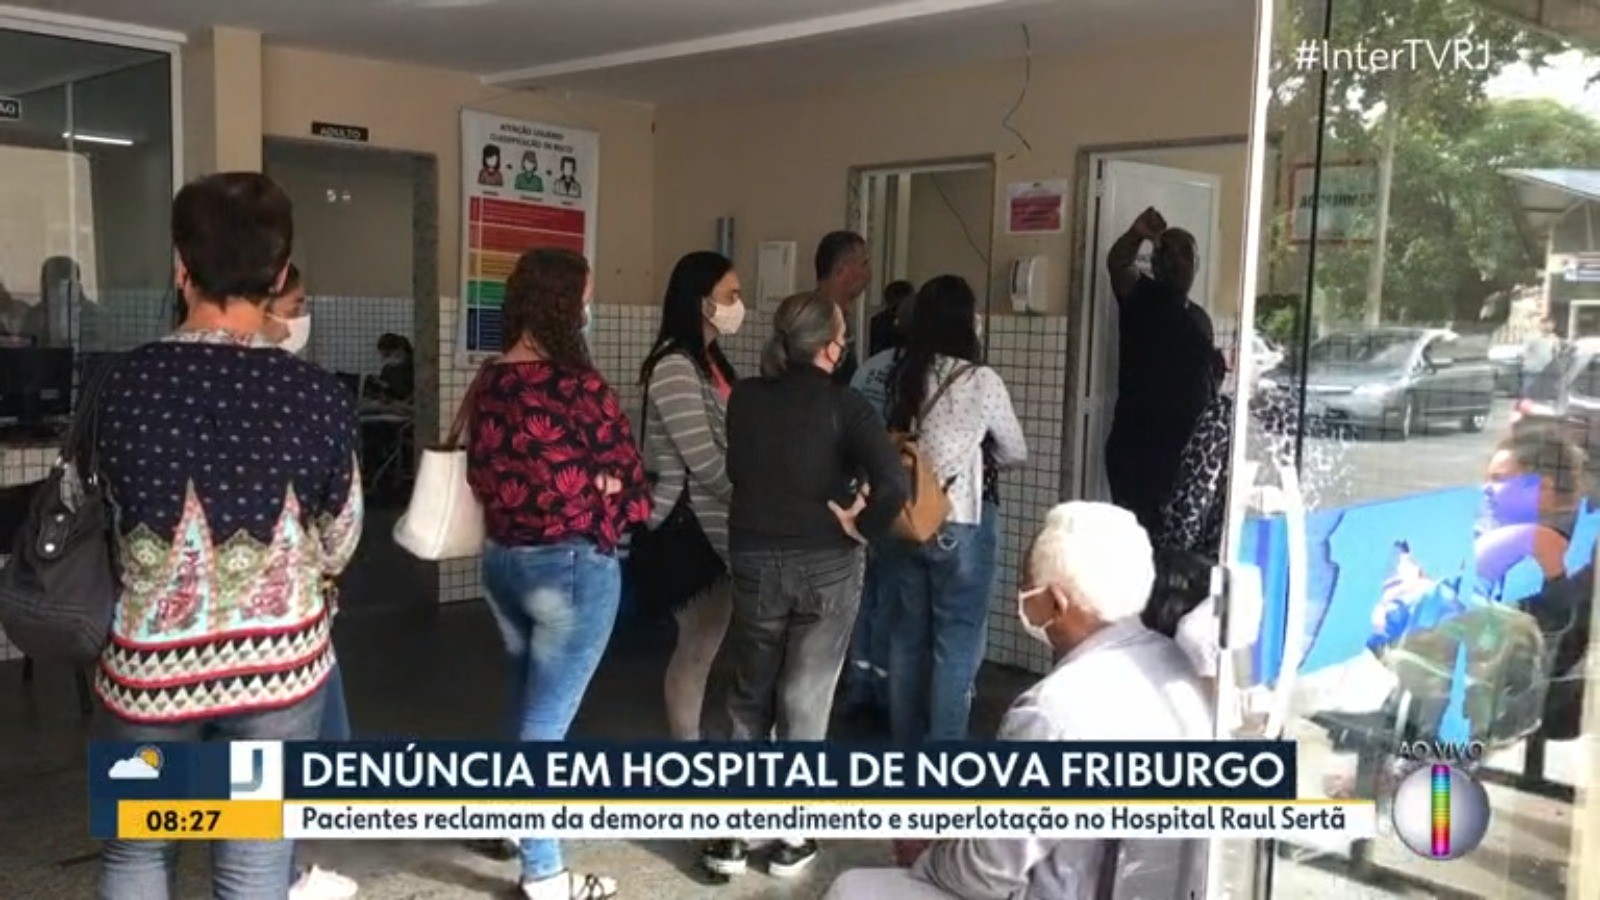 Pacientes denunciam superlotação e demora no atendimento no principal hospital público de Nova Friburgo